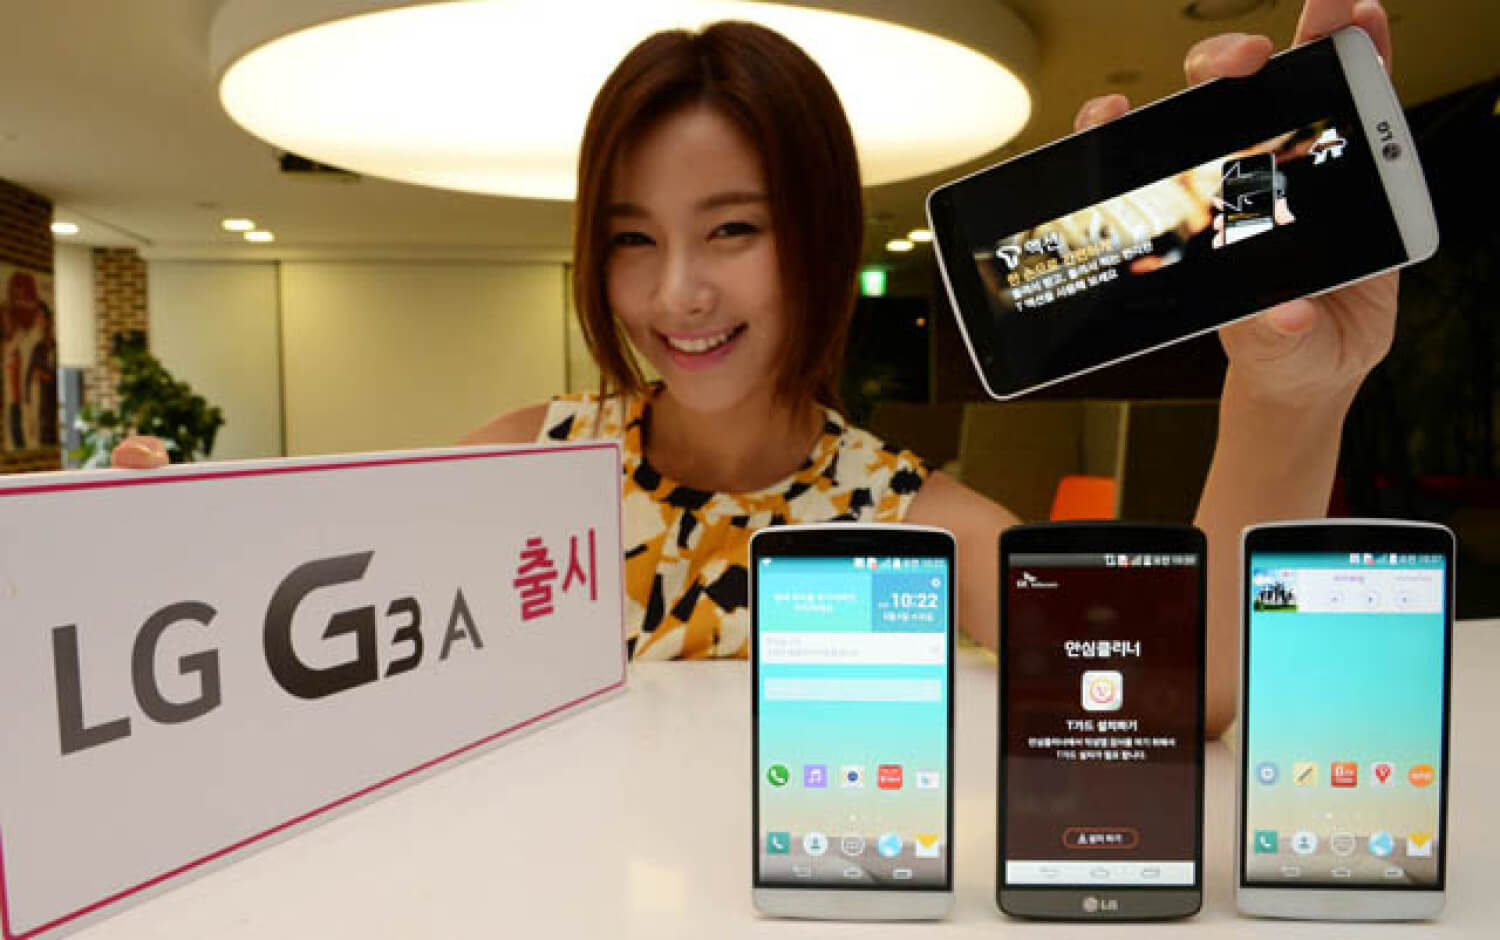 LG G3 A — еще один «мини-флагман». Фото.